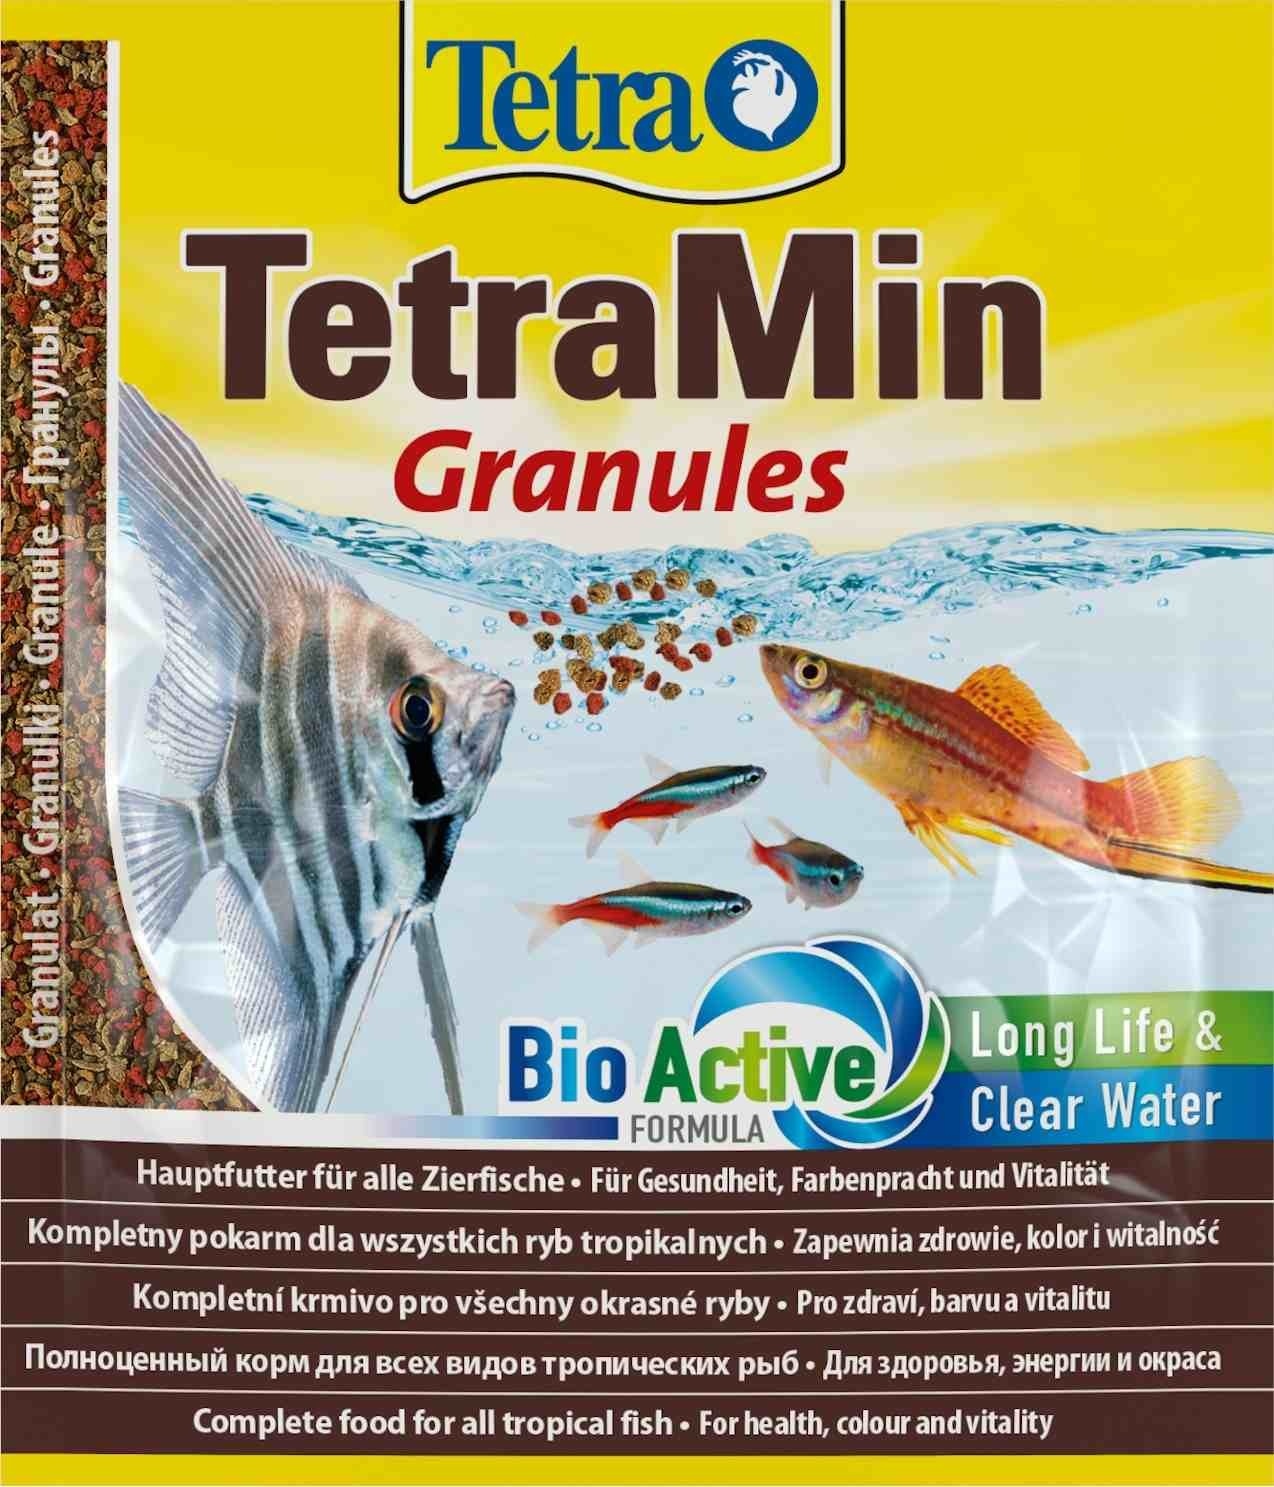 Tetra (корма) Tetra (корма) корм для всех видов тропических рыб. гранулы TetraMin Granules (15 г)